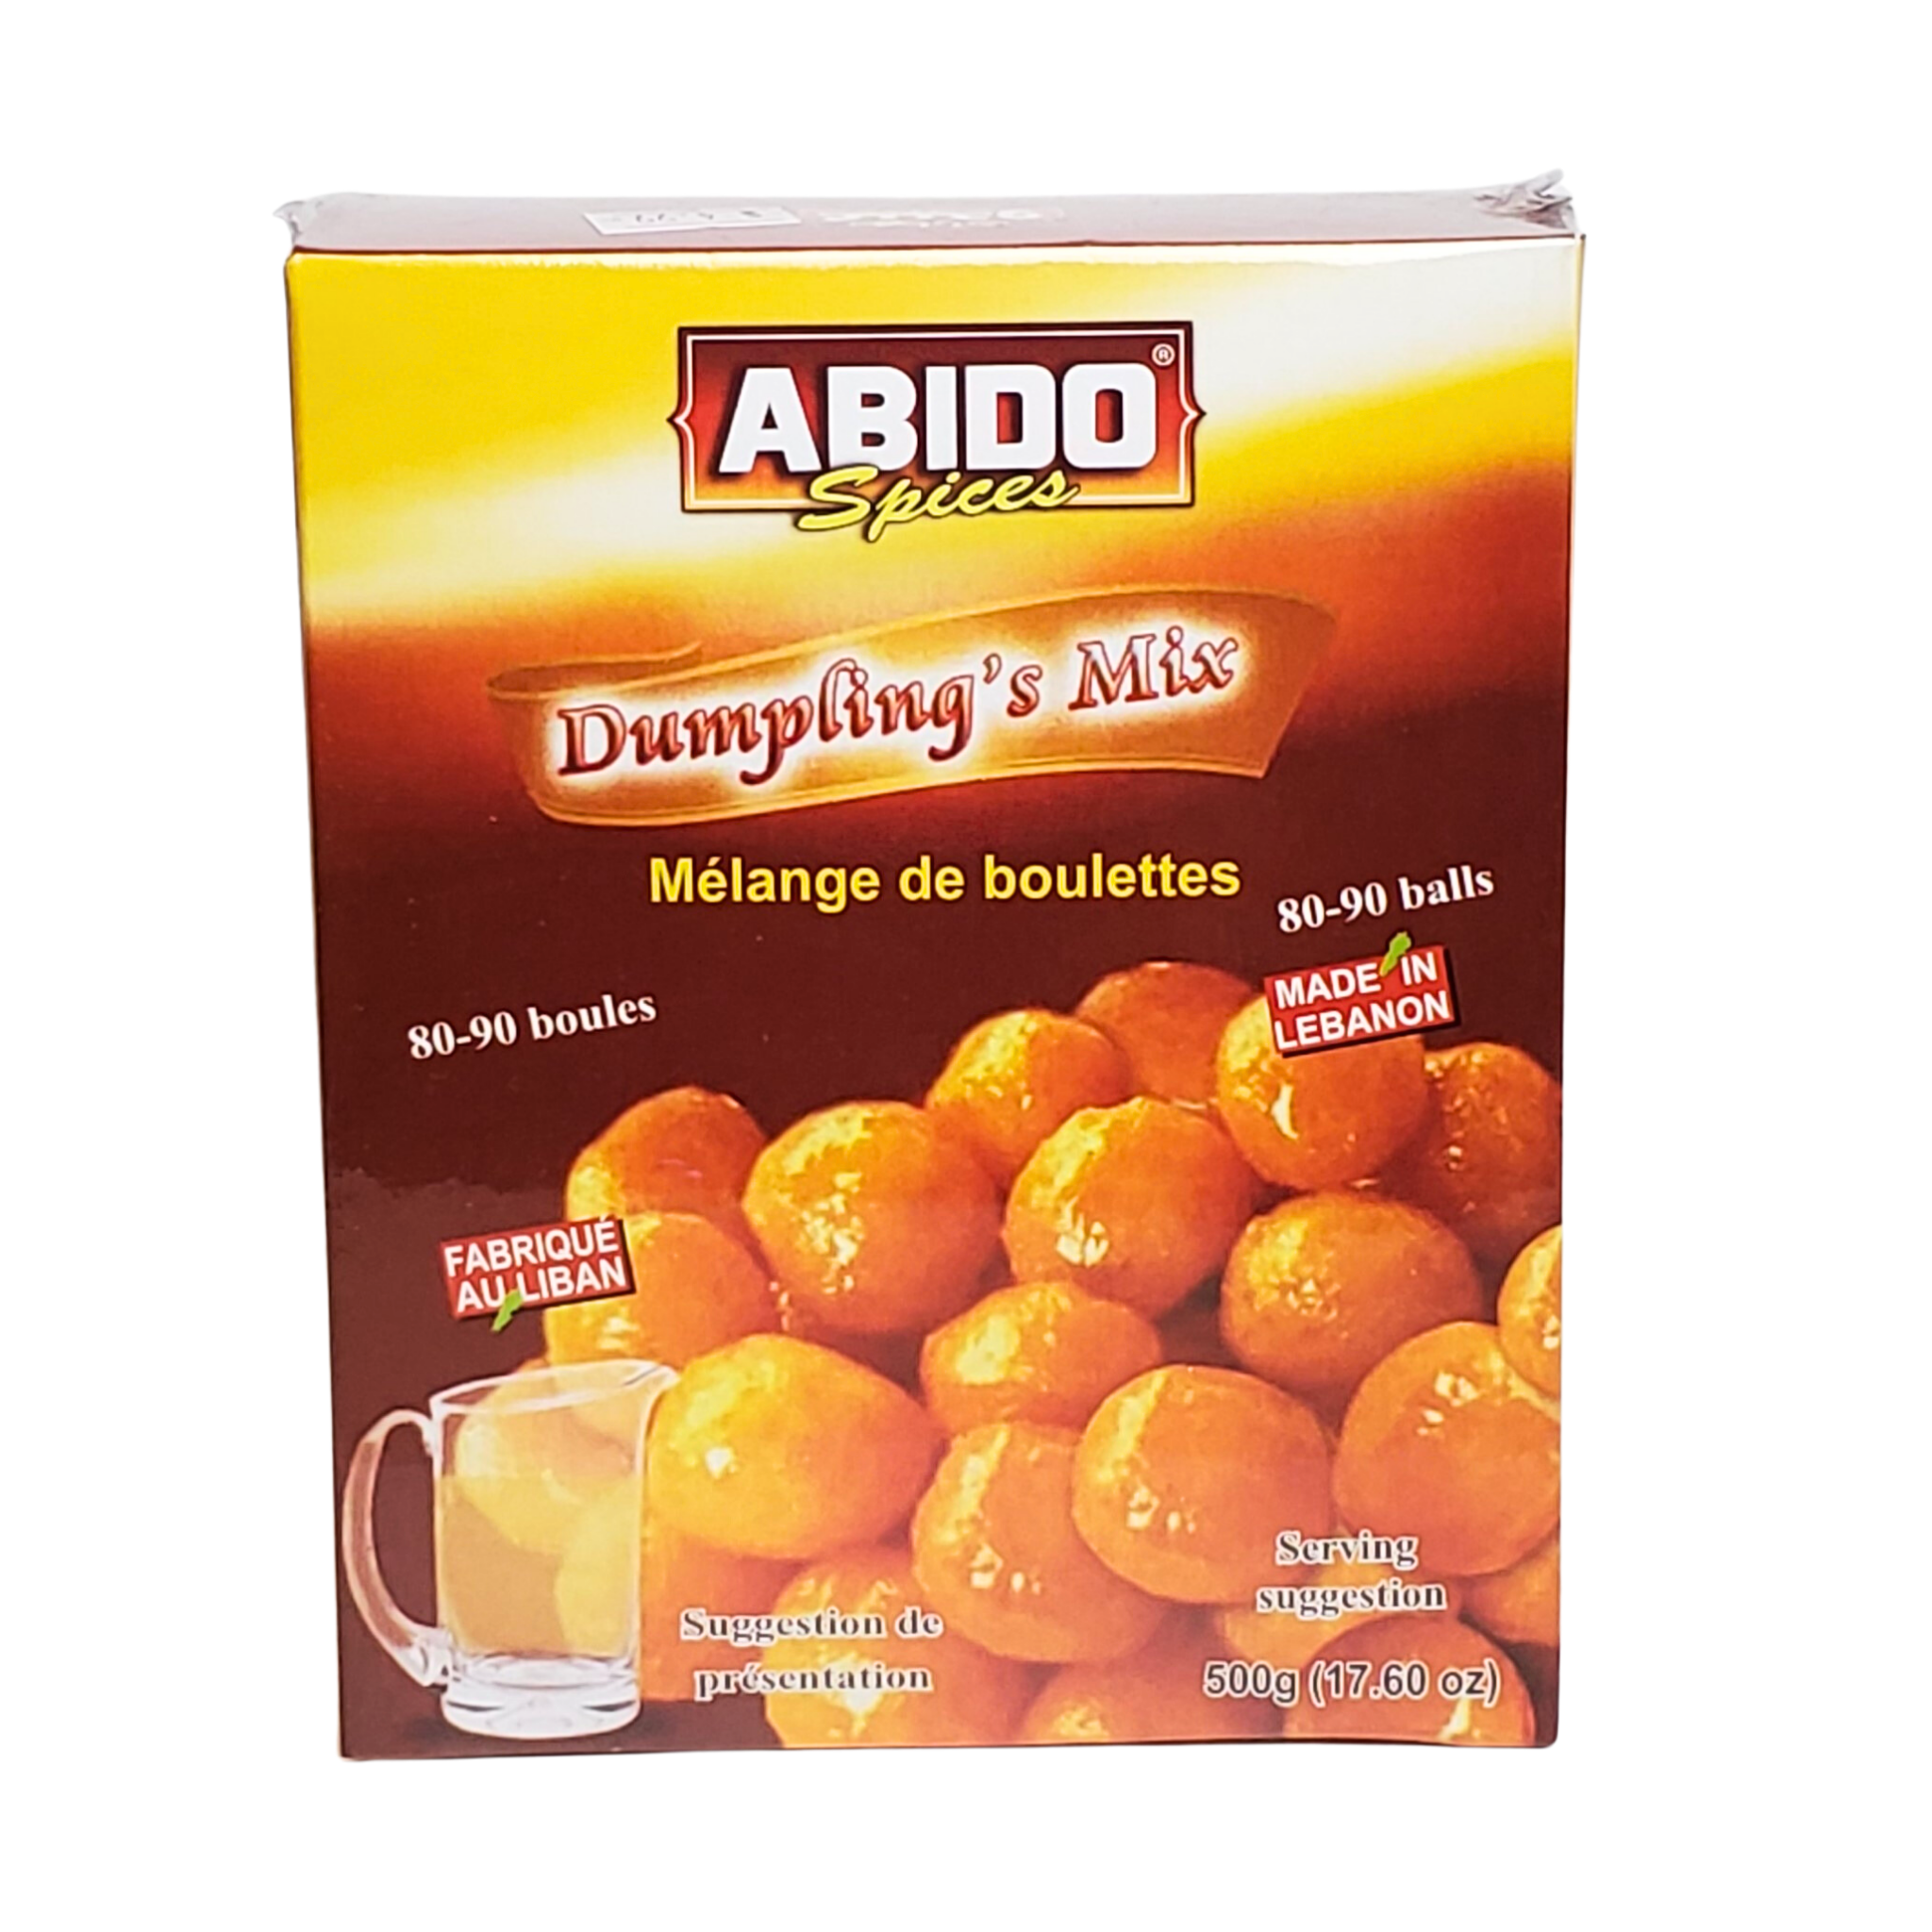 ABIDO spices Dumpling's Mix